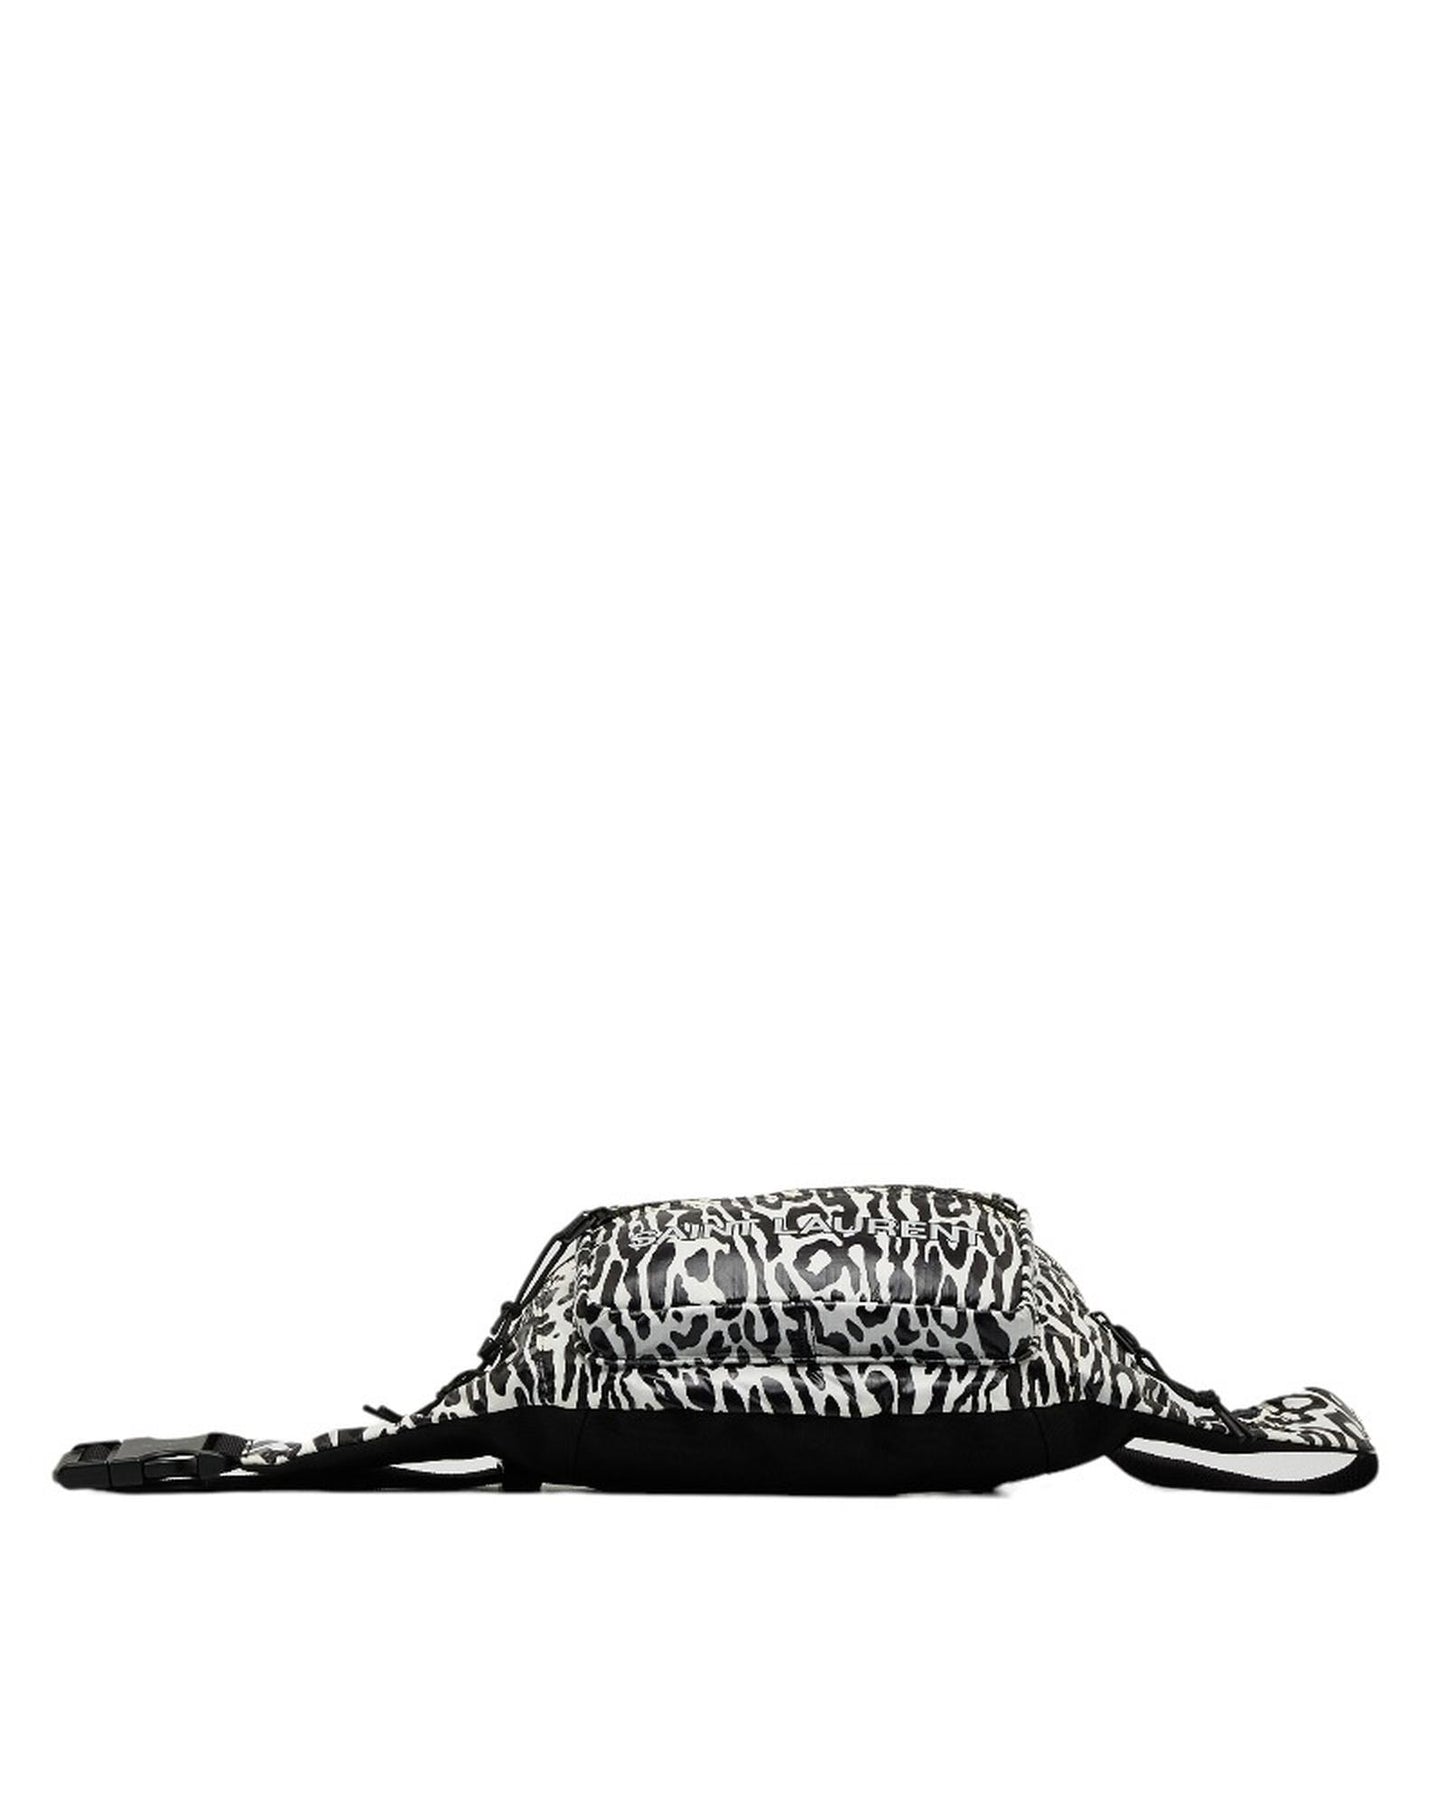 Yves Saint Laurent Women's Printed Nylon Waist Bag by Yves Saint Laurent in Black